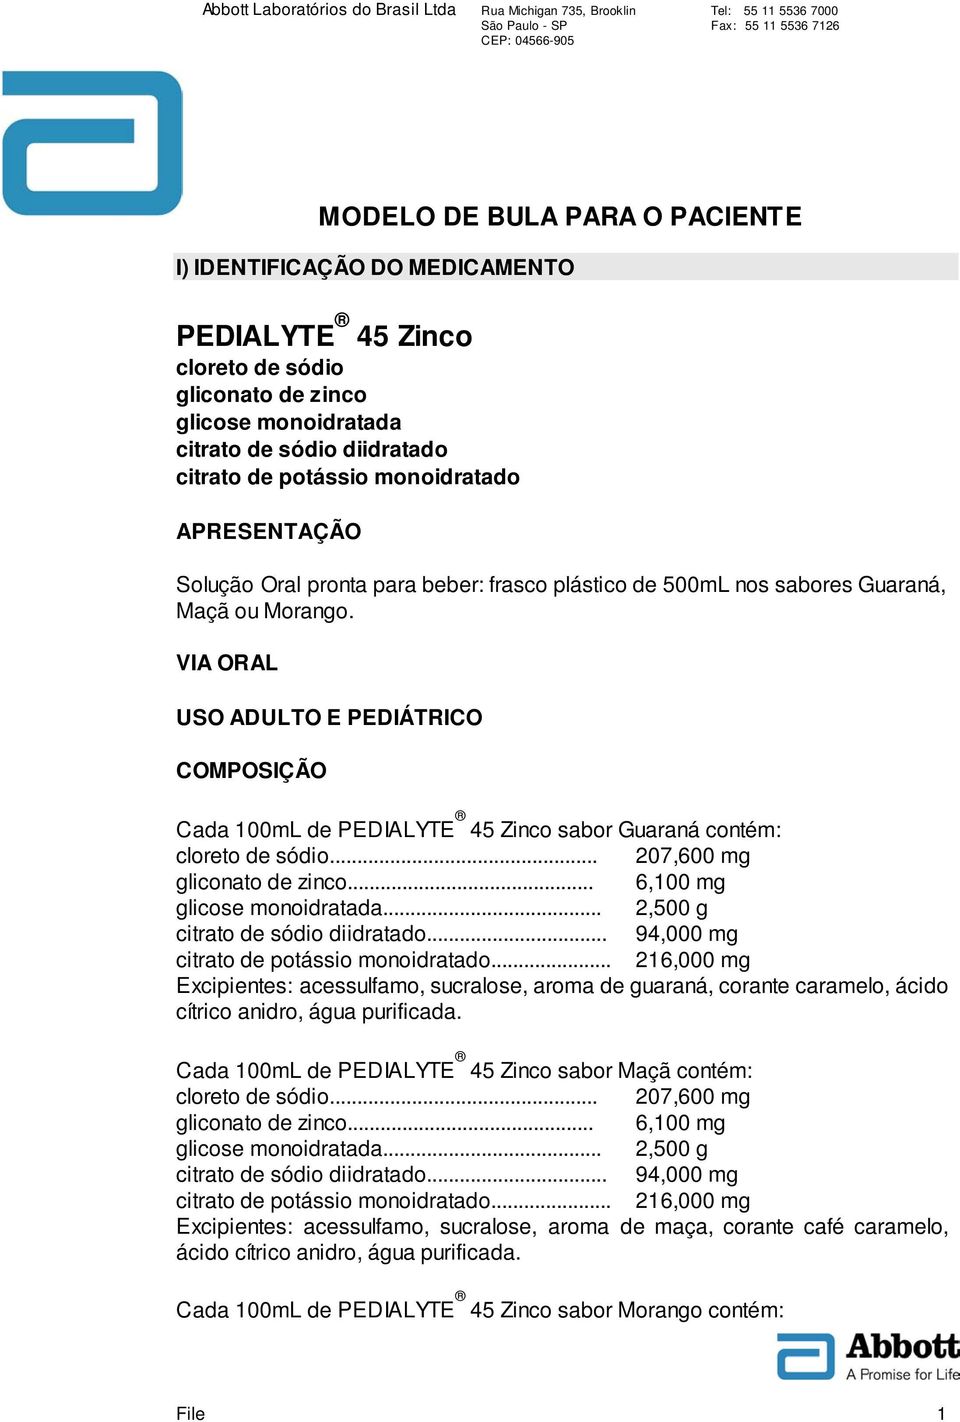 VIA ORAL USO ADULTO E PEDIÁTRICO COMPOSIÇÃO Cada 100mL de PEDIALYTE 45 Zinco sabor Guaraná contém: cloreto de sódio... 207,600 mg gliconato de zinco... 6,100 mg glicose monoidratada.